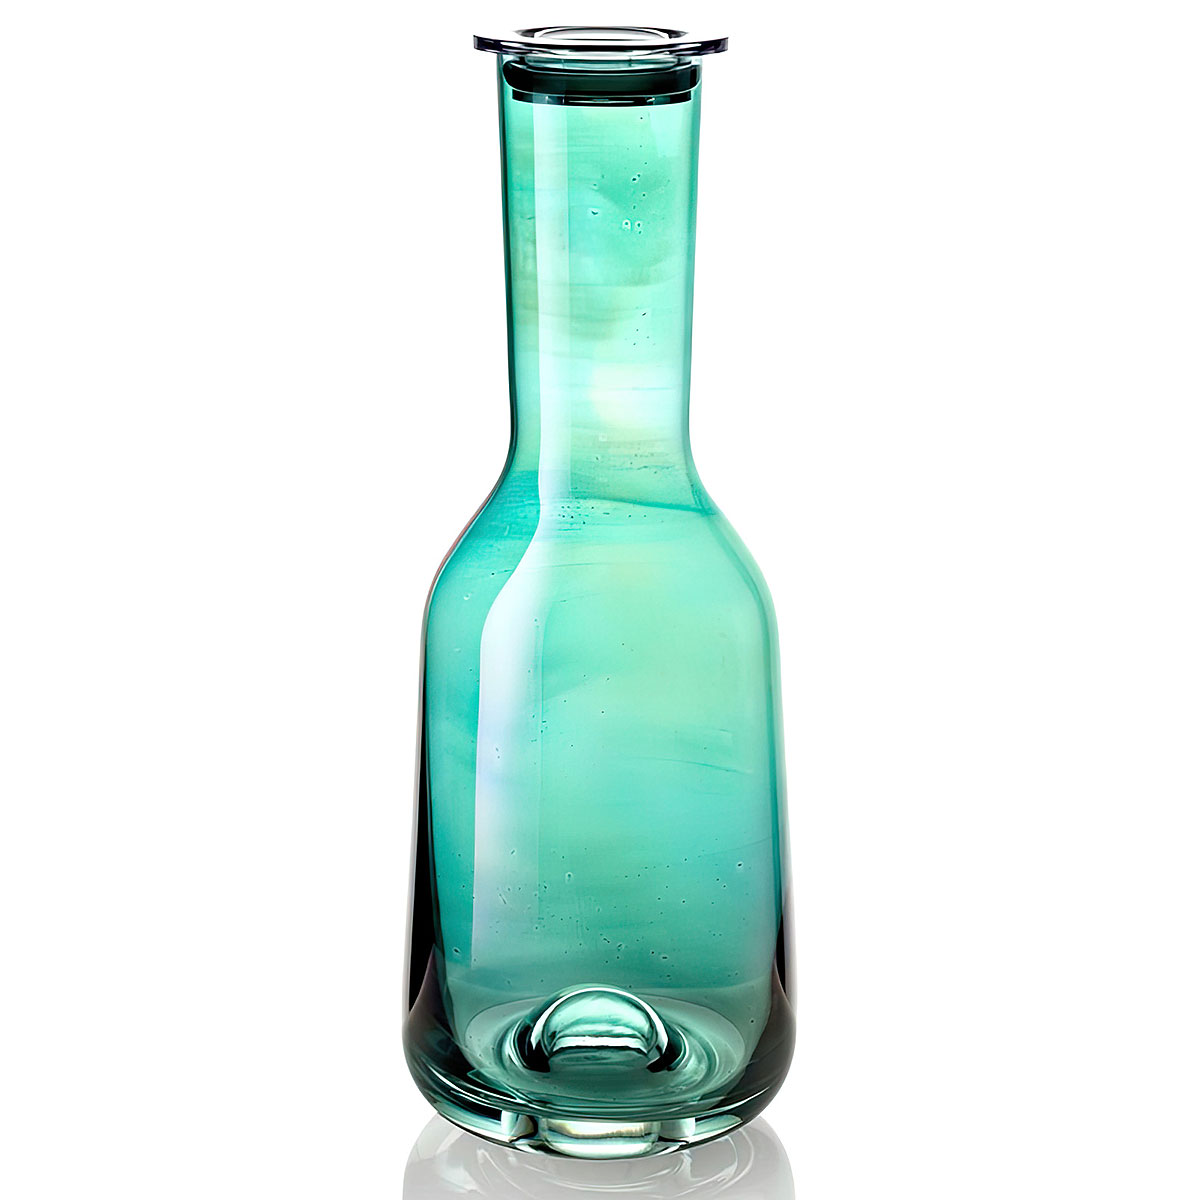 Бутылка с крышкой IVV Acquacheta, цвет зеленый IVV 8342.3